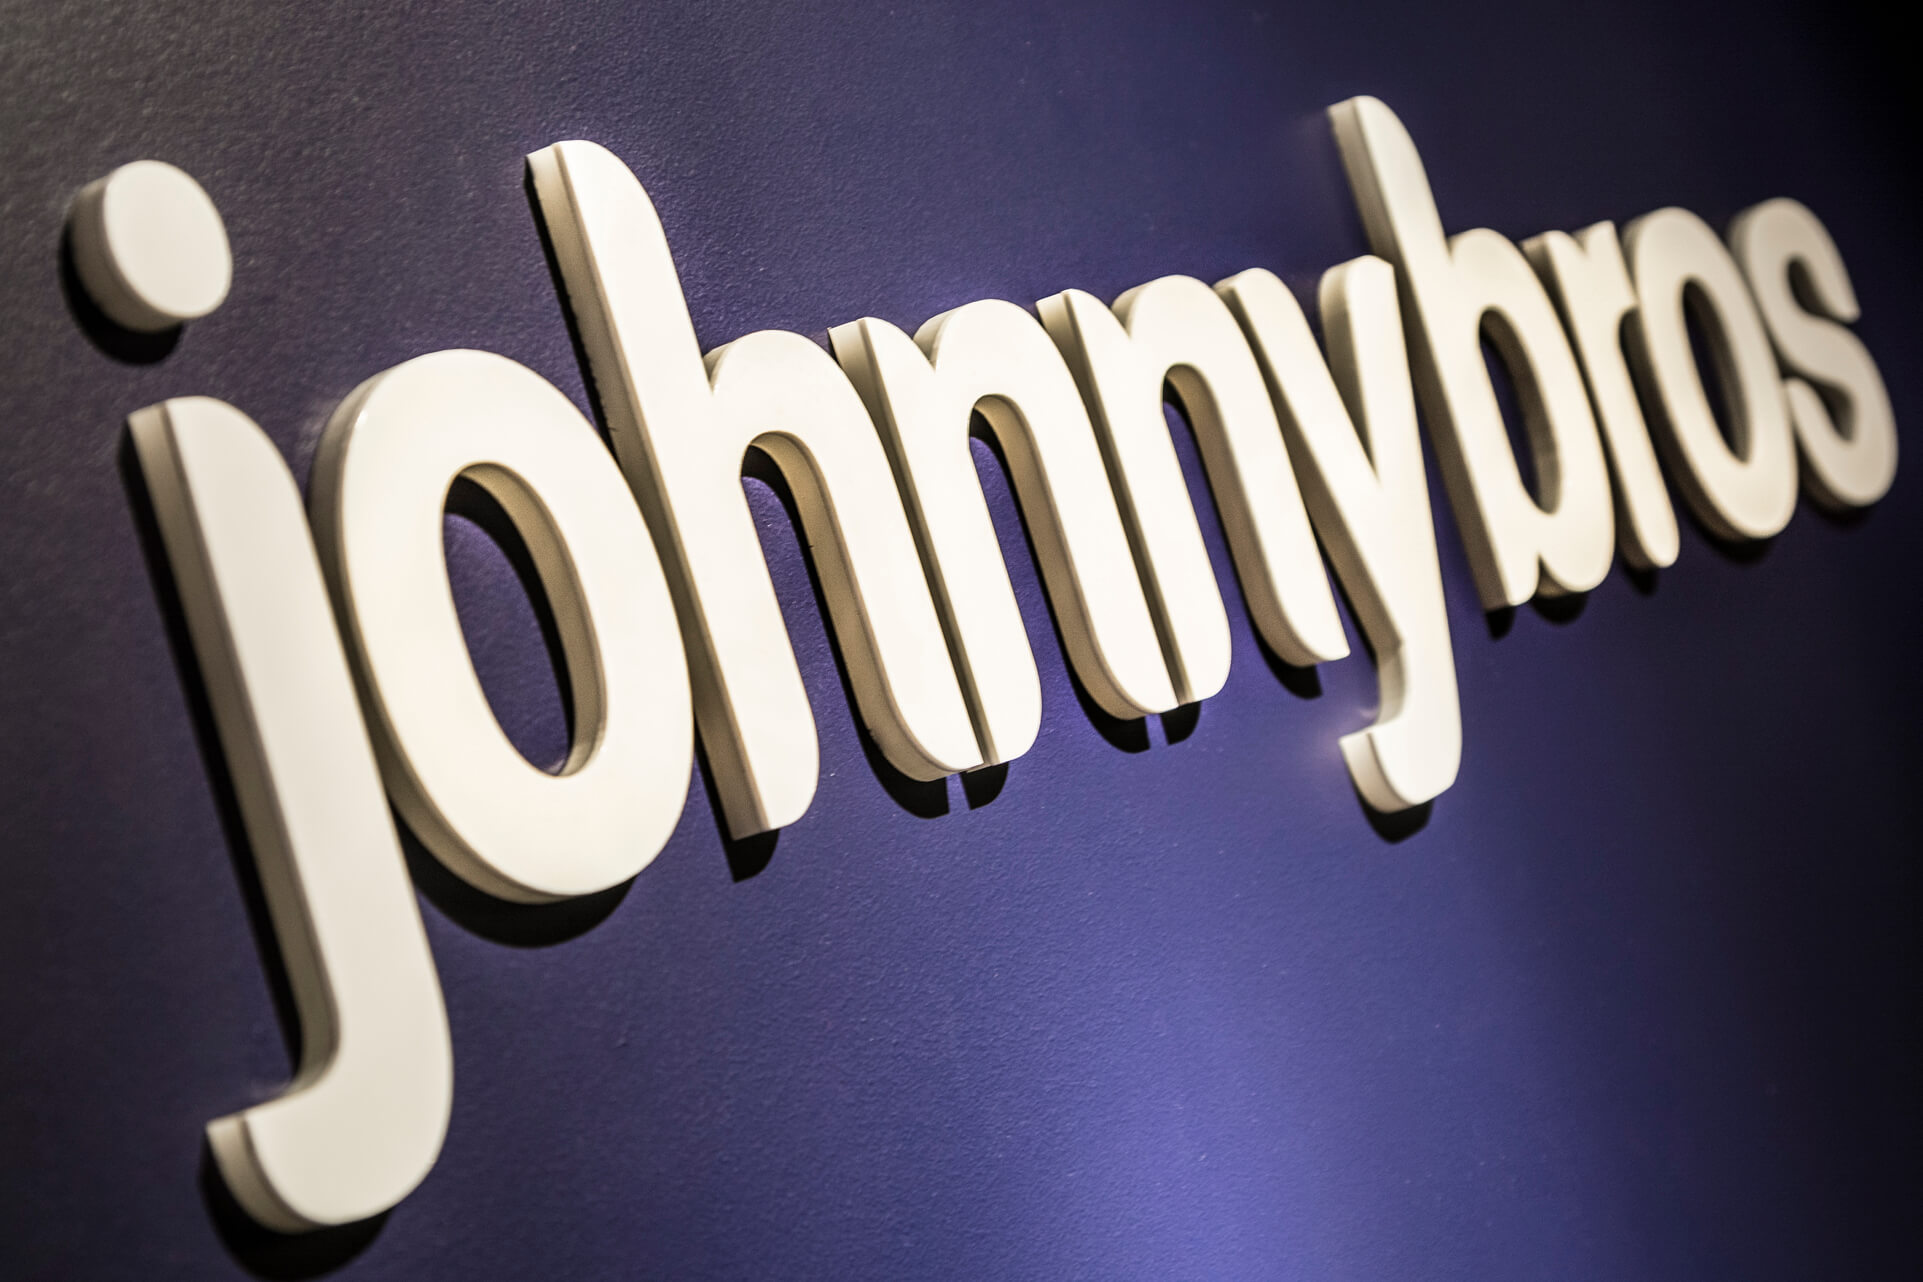 Johnnybros - Johnybros - 3D-Buchstaben aus Acryl, mit Laser ausgeschnitten